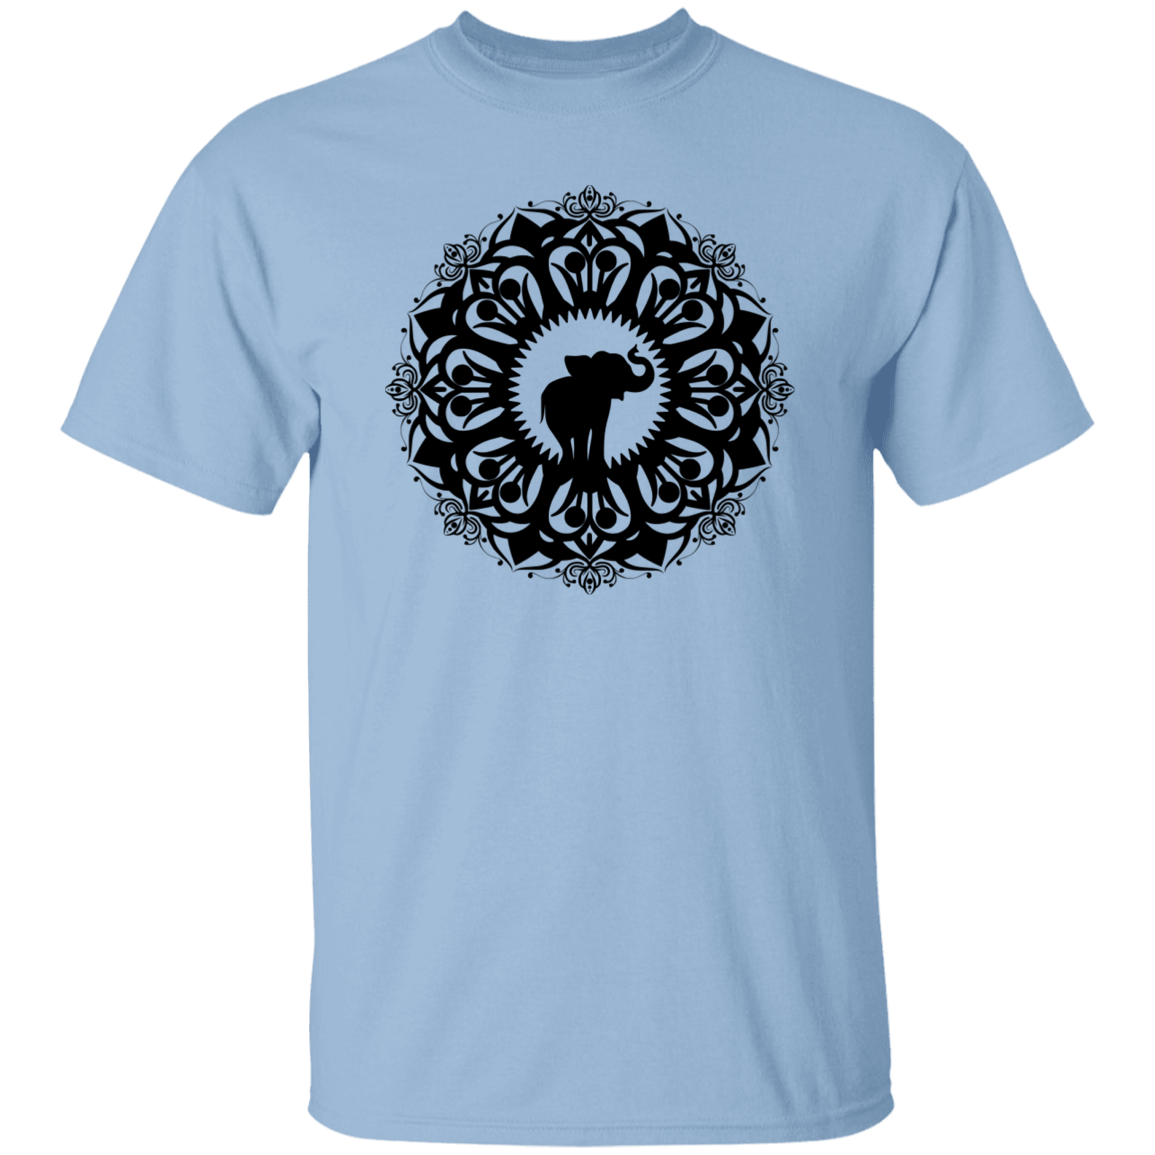 Elephant 5.3 oz. T-Shirt